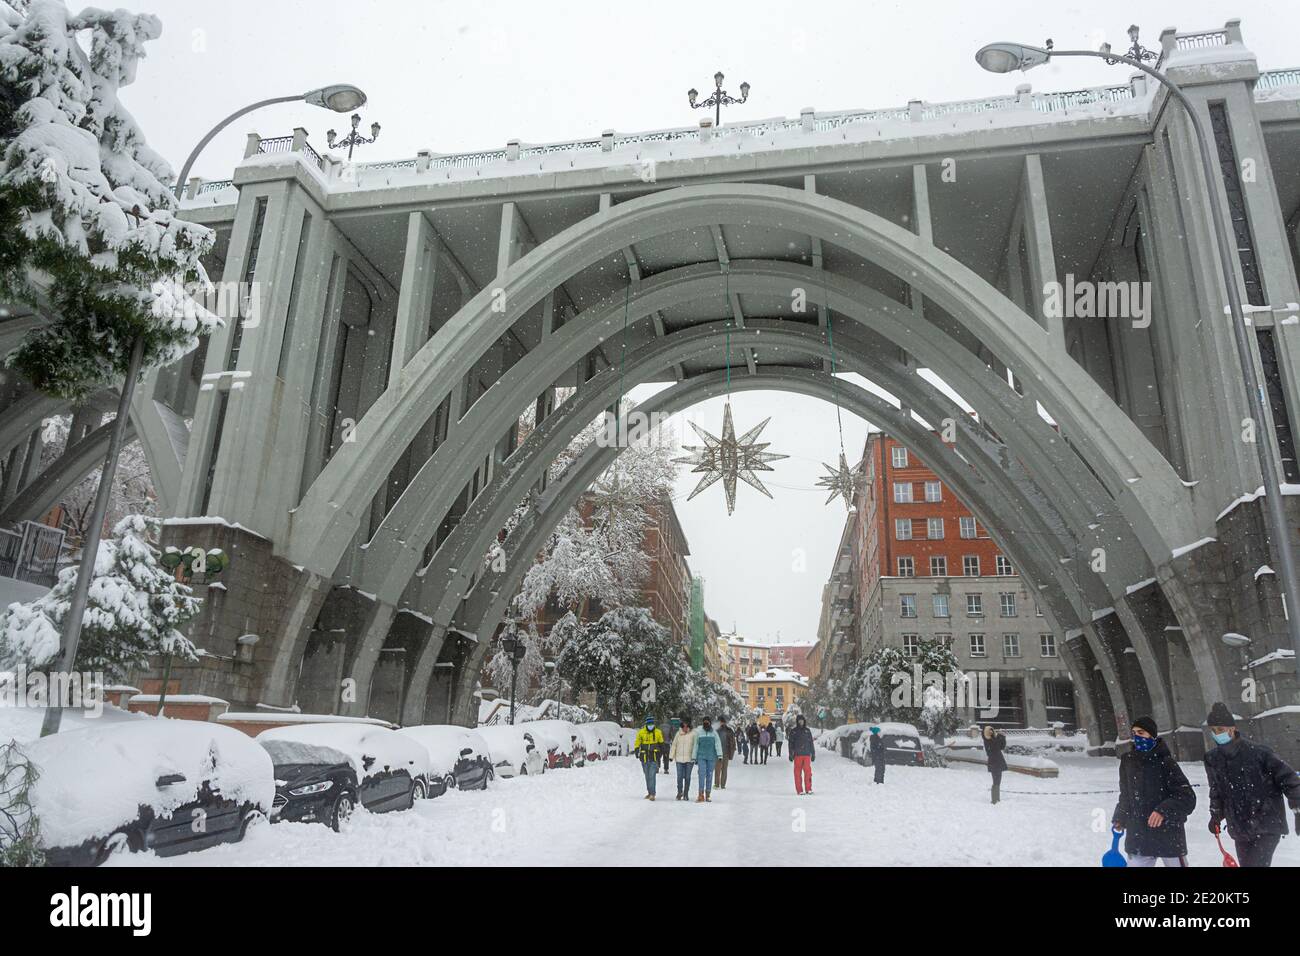 Madrid, Espagne, 01.09.2021, rue enneigée et pont Segovia dans le centre de Madrid, il neige, la tempête Filomena Banque D'Images